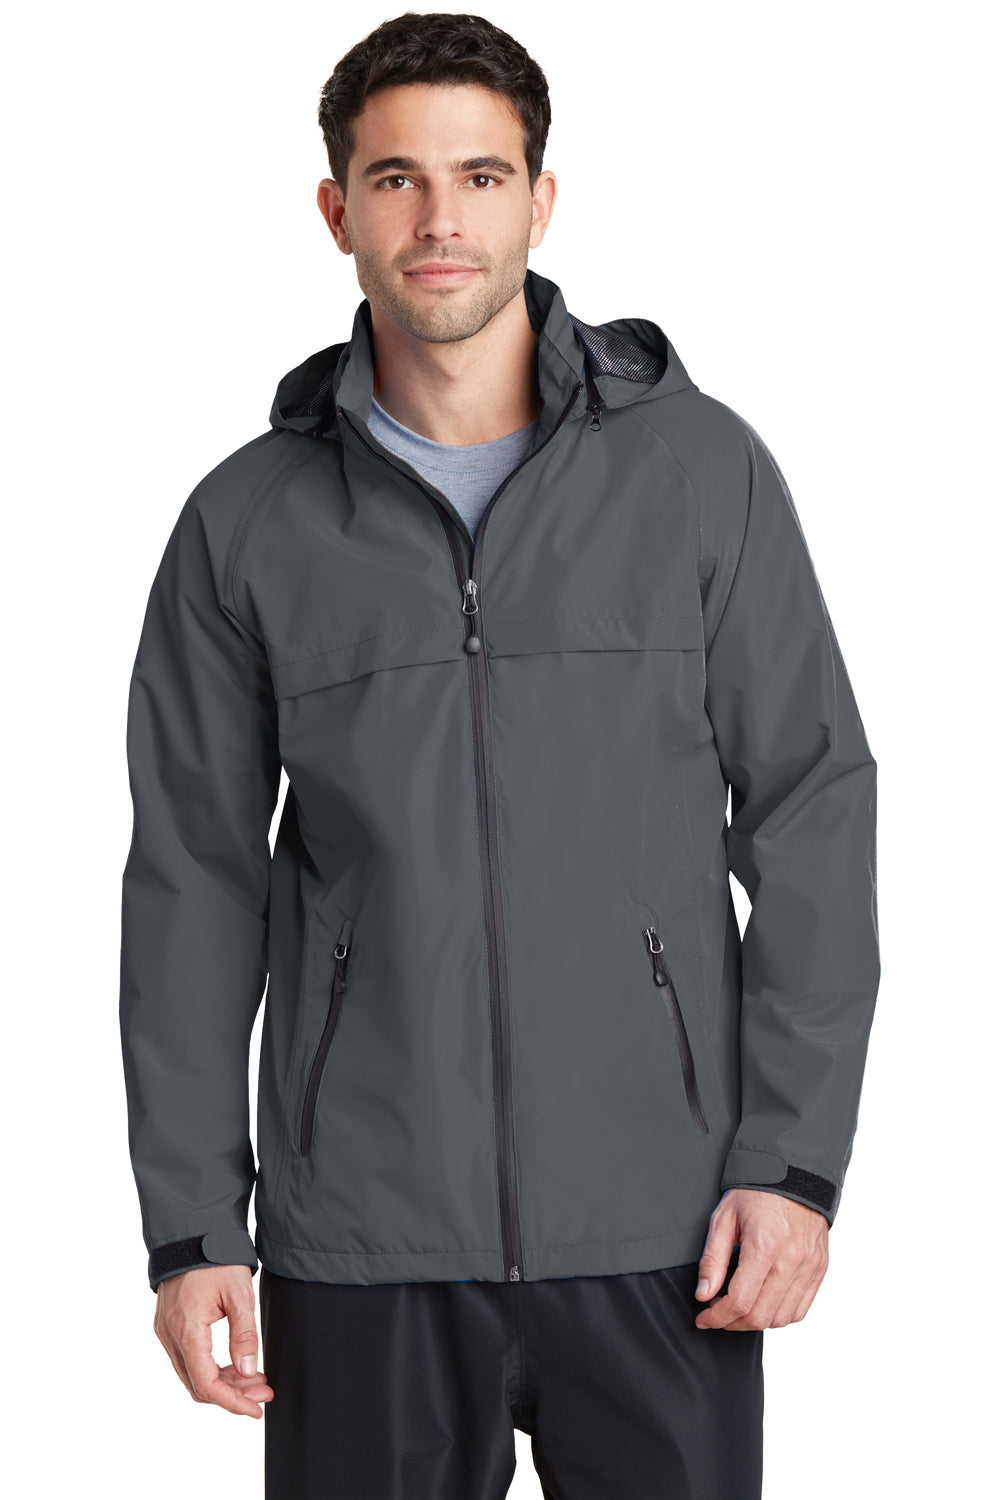 Port Authority J333 Mens Torrent Waterproof Full Zip Hooded Jacket Grey Front